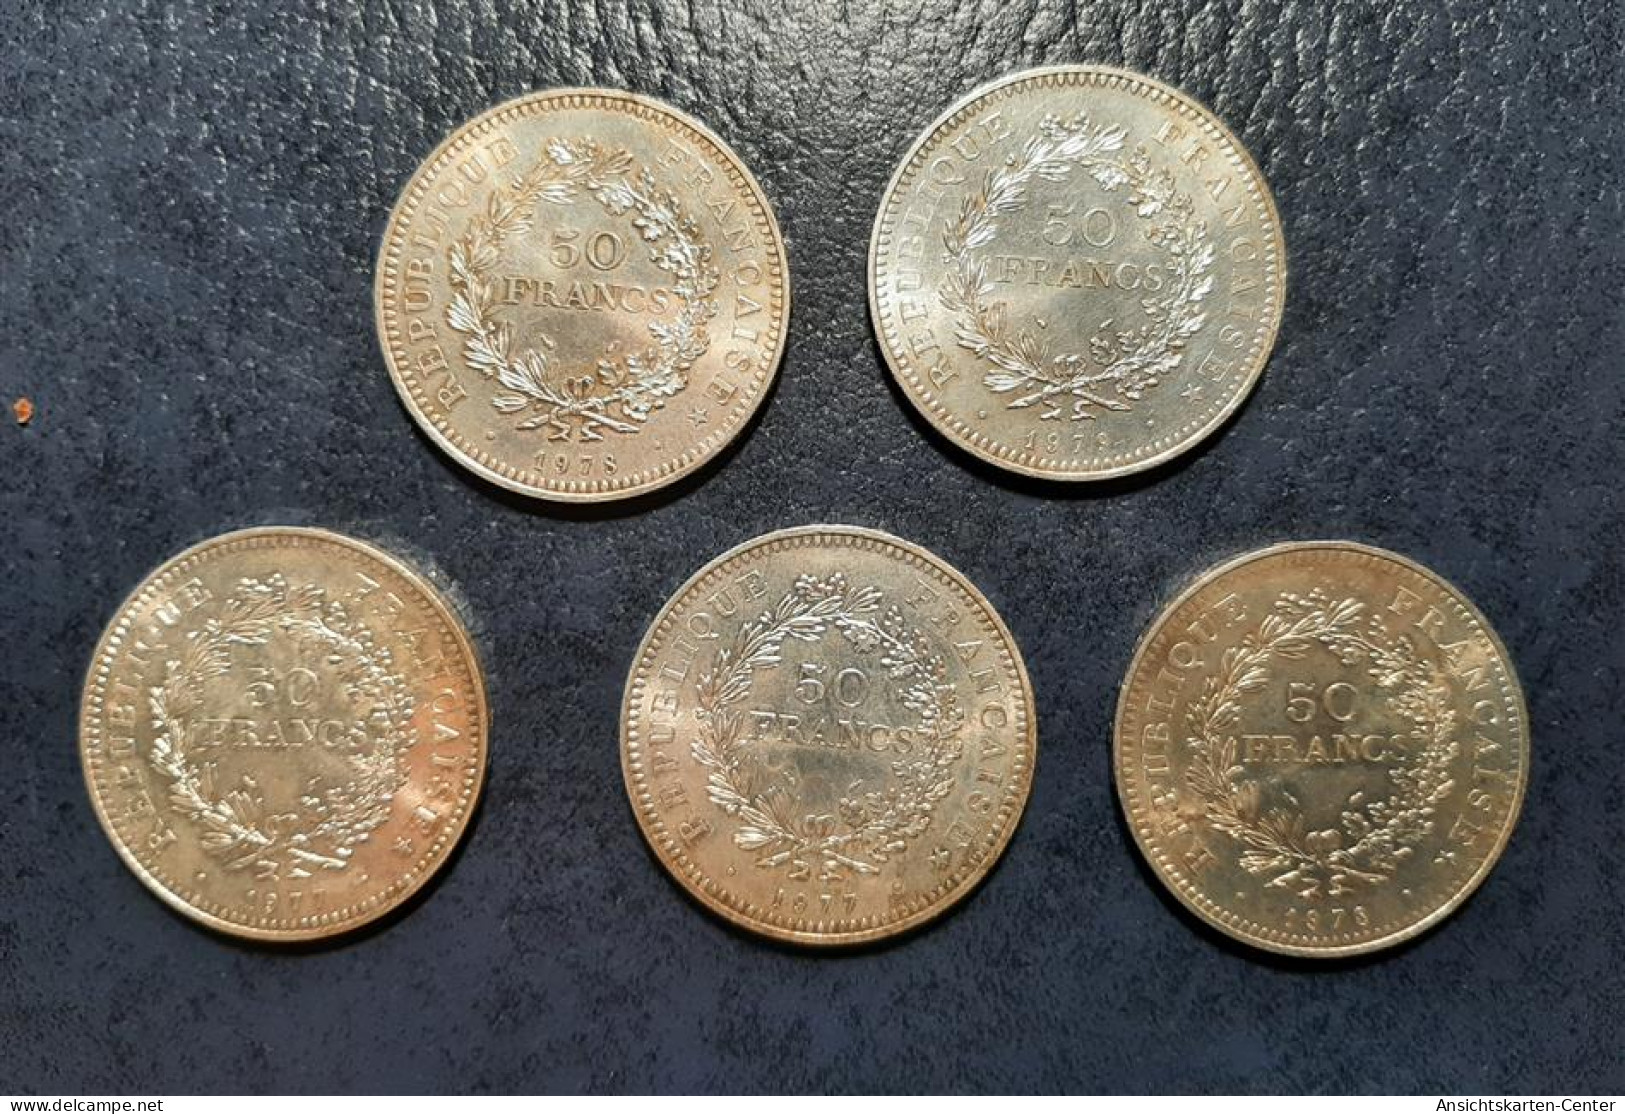 13707511 - Frankreich 5 X 50 Fr. Div. Jahrgaenge Feinheit 900/1000 Silber Feingewicht Gesamt 135 G - Monete (rappresentazioni)